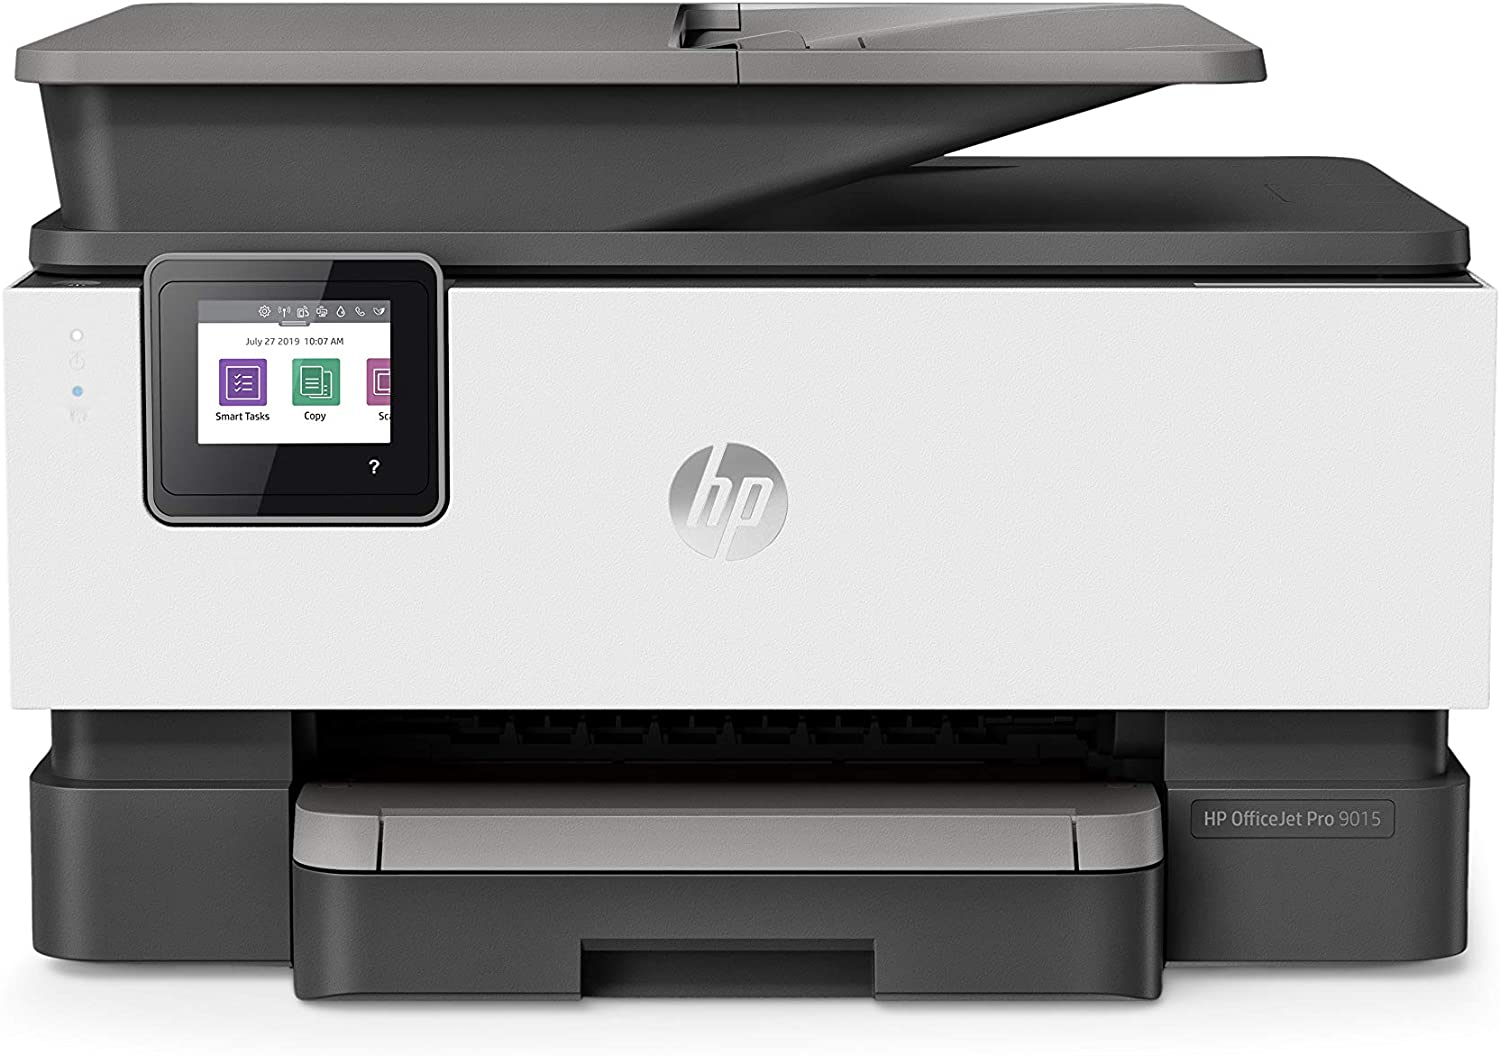  9. HP OfficeJet Pro Inkjet Printers 